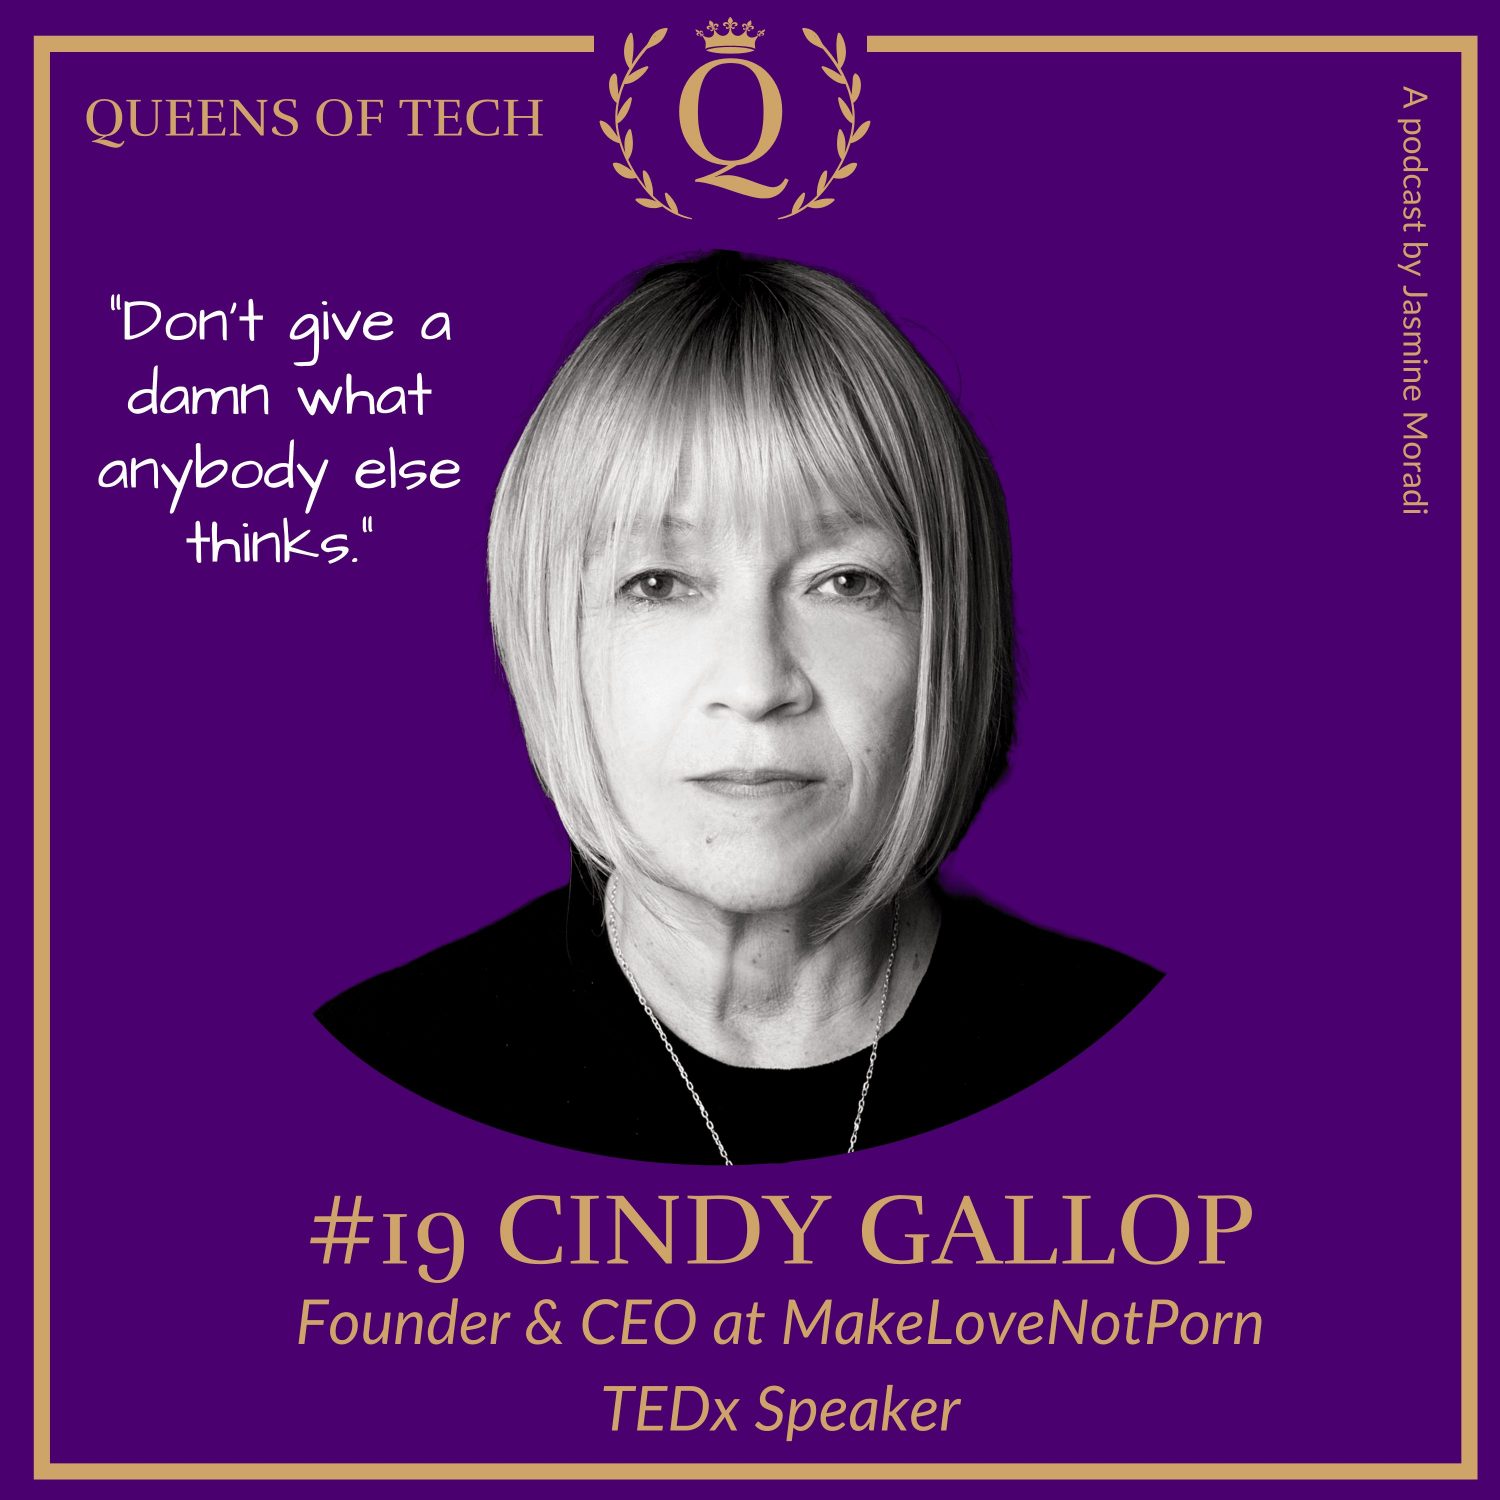 Cindy Gallop-MakeLoveNotPortn-Queens-of-tech-podcat